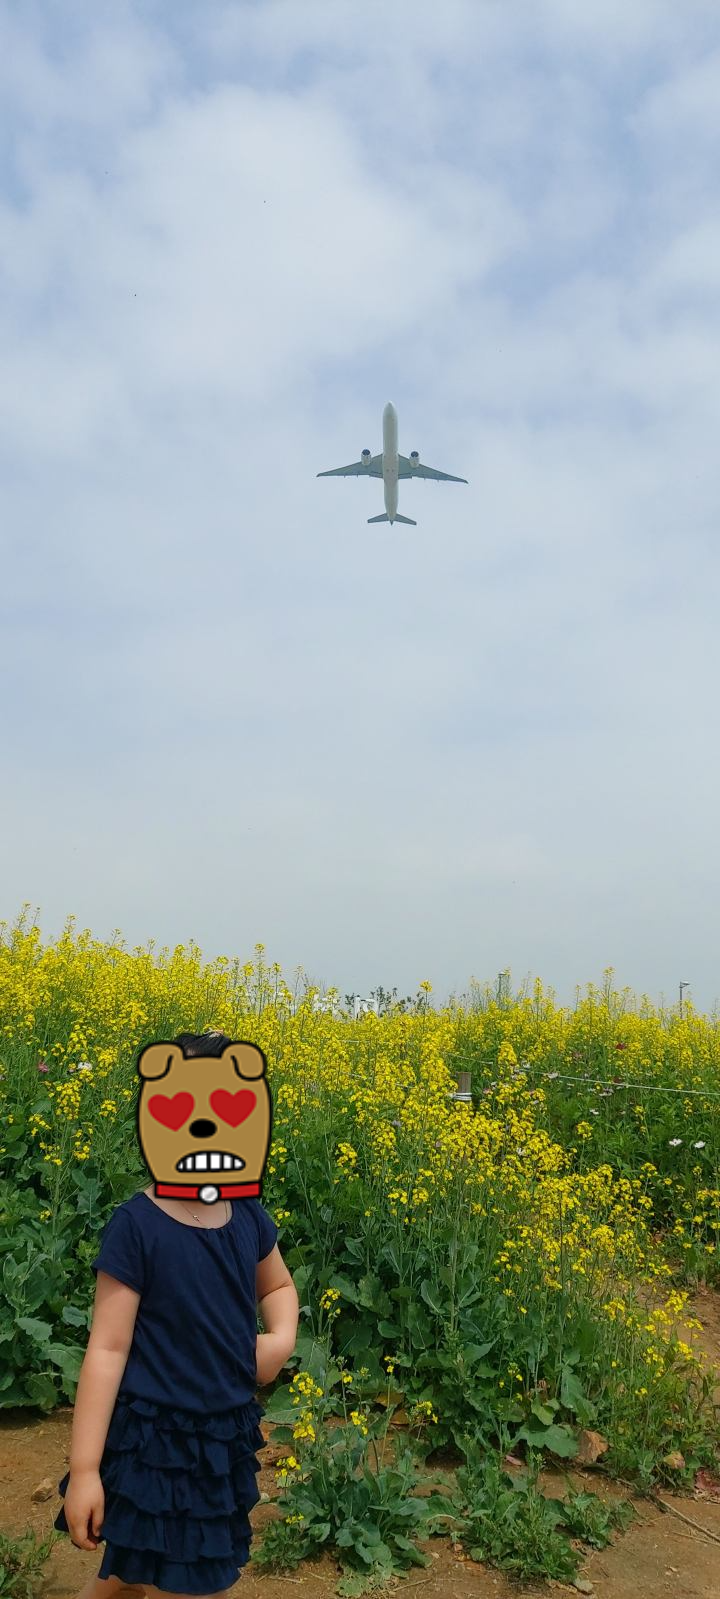 인천토박이가 알려주는 인천가볼만한곳- 인천국제공항하늘정원